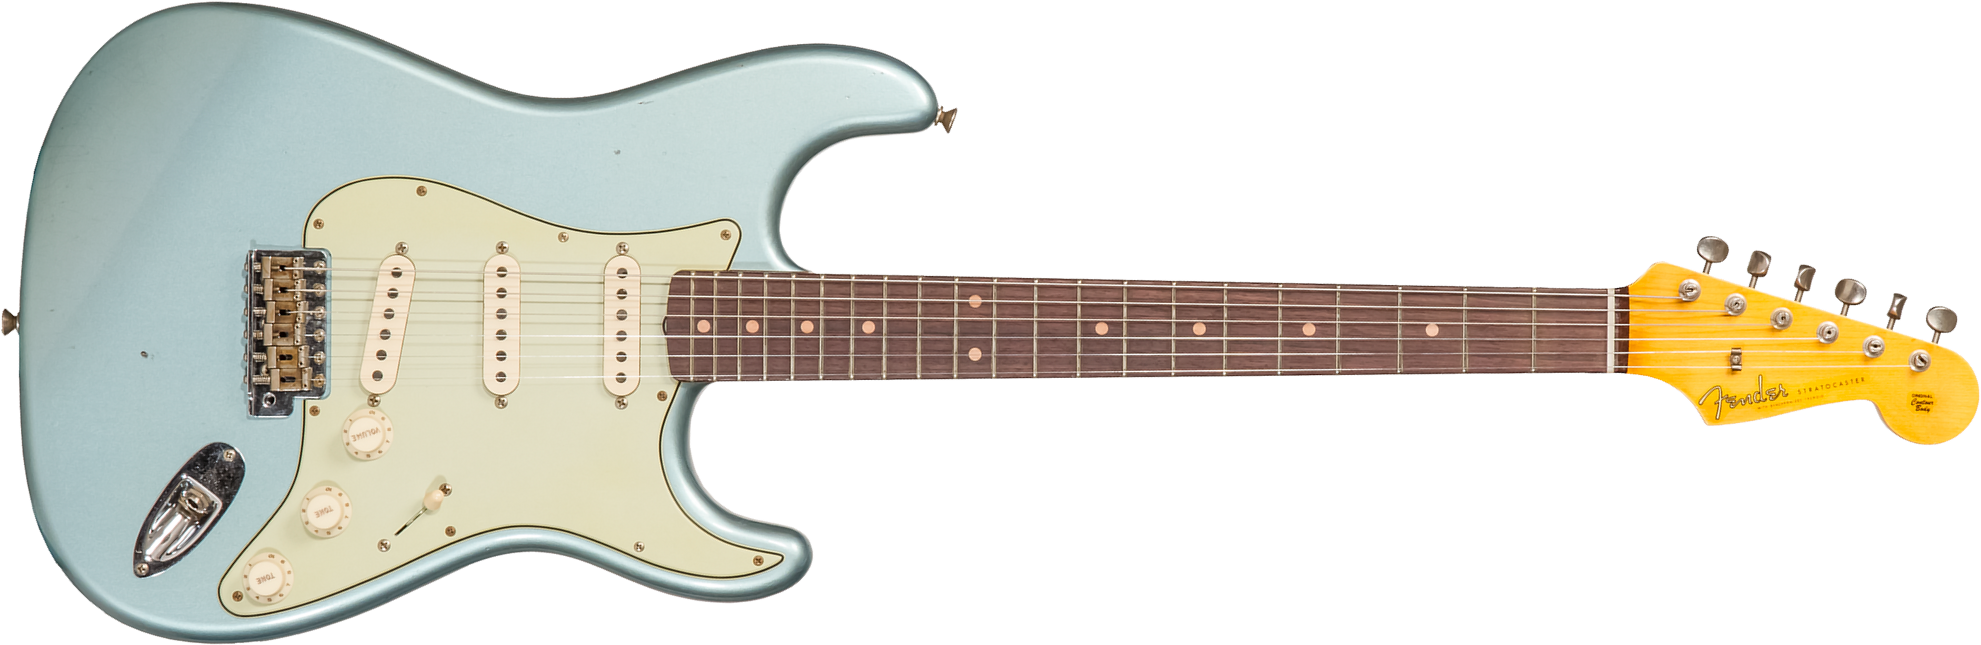 Fender Custom Shop Strat 1959 3s Trem Rw #cz570883 - Journeyman Relic Teal Green Metallic - Guitare Électrique Forme Str - Main picture